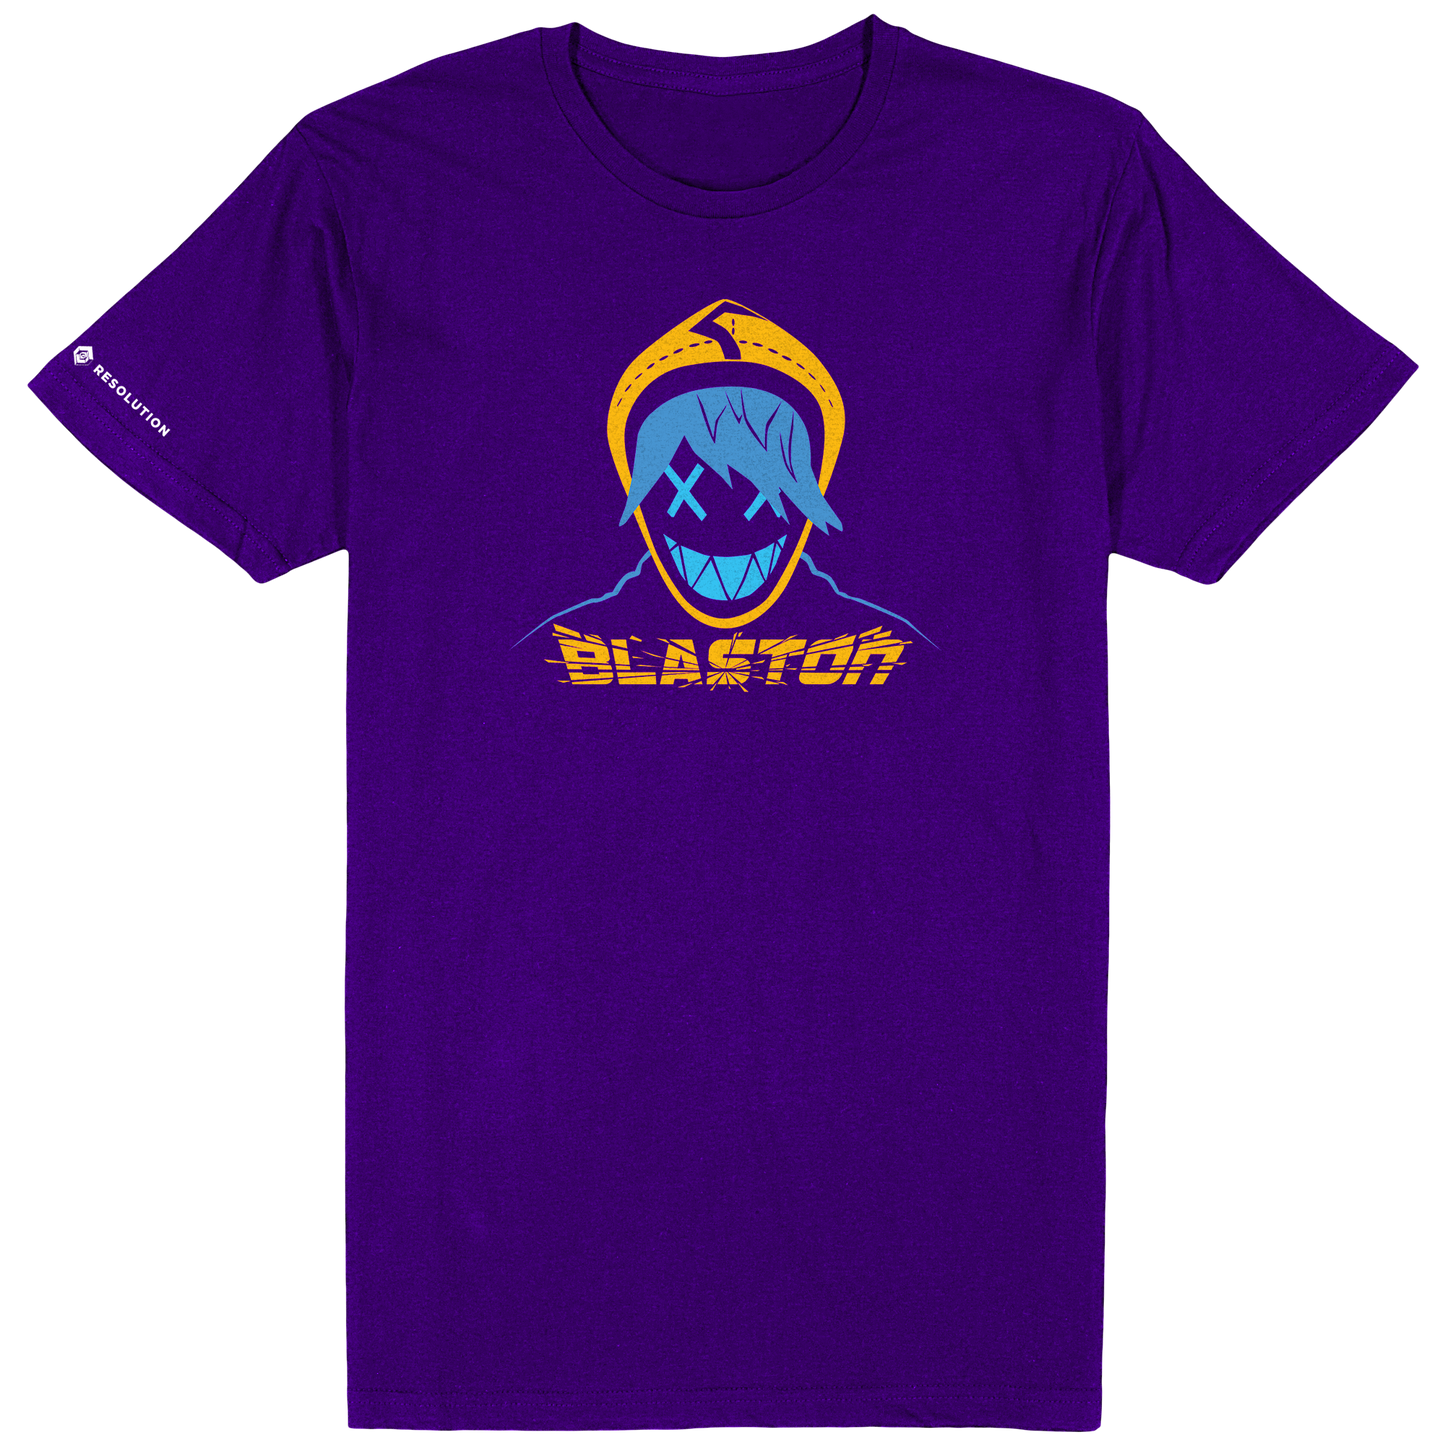 Blaston Hax Tee - Purple